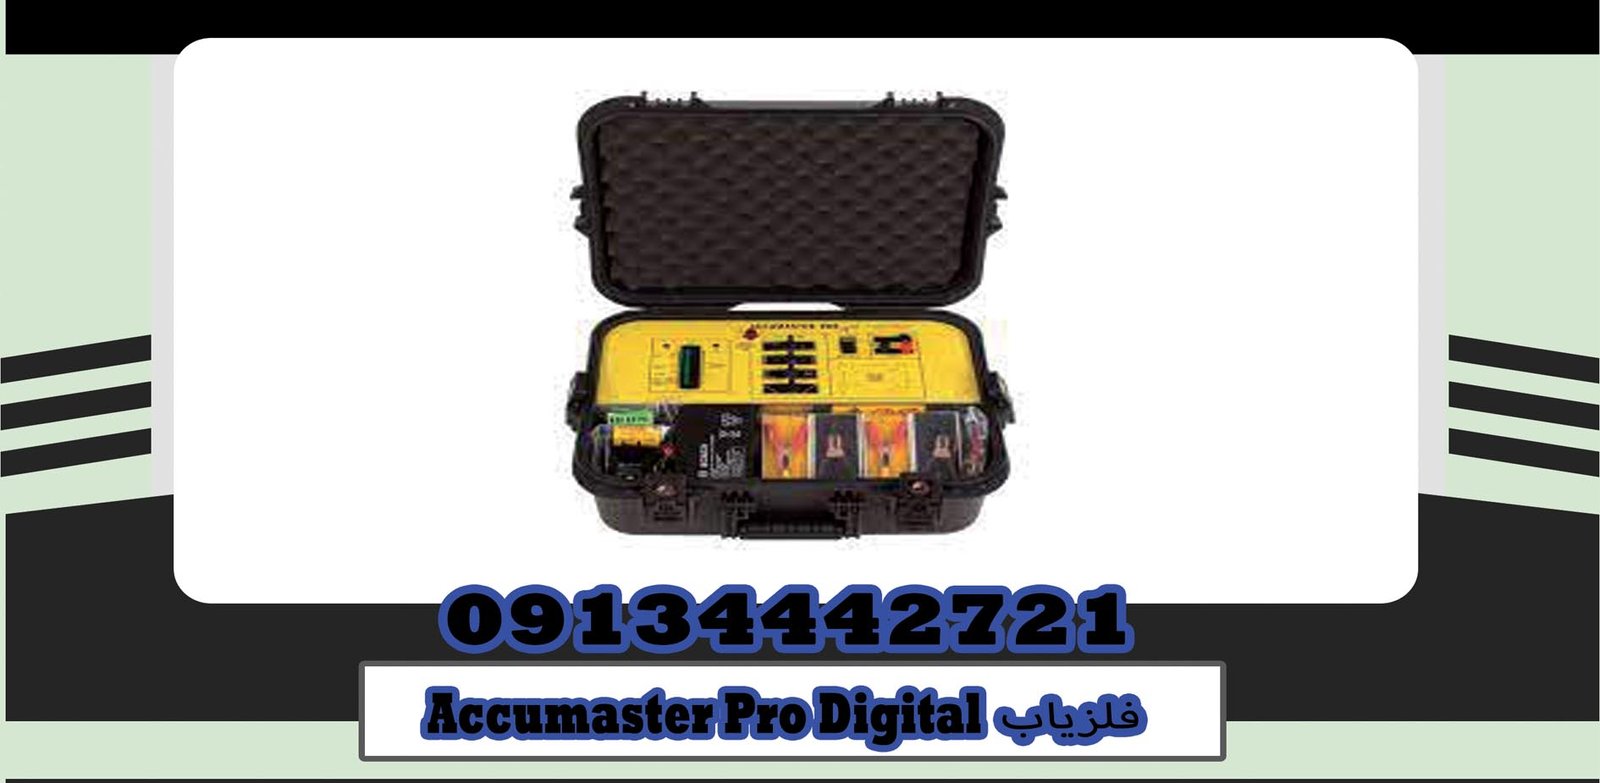 خریدفلزیاب Accumaster Pro Digital|گوهرباستان|۰۹۱۳۴۴۴۲۷۲۱